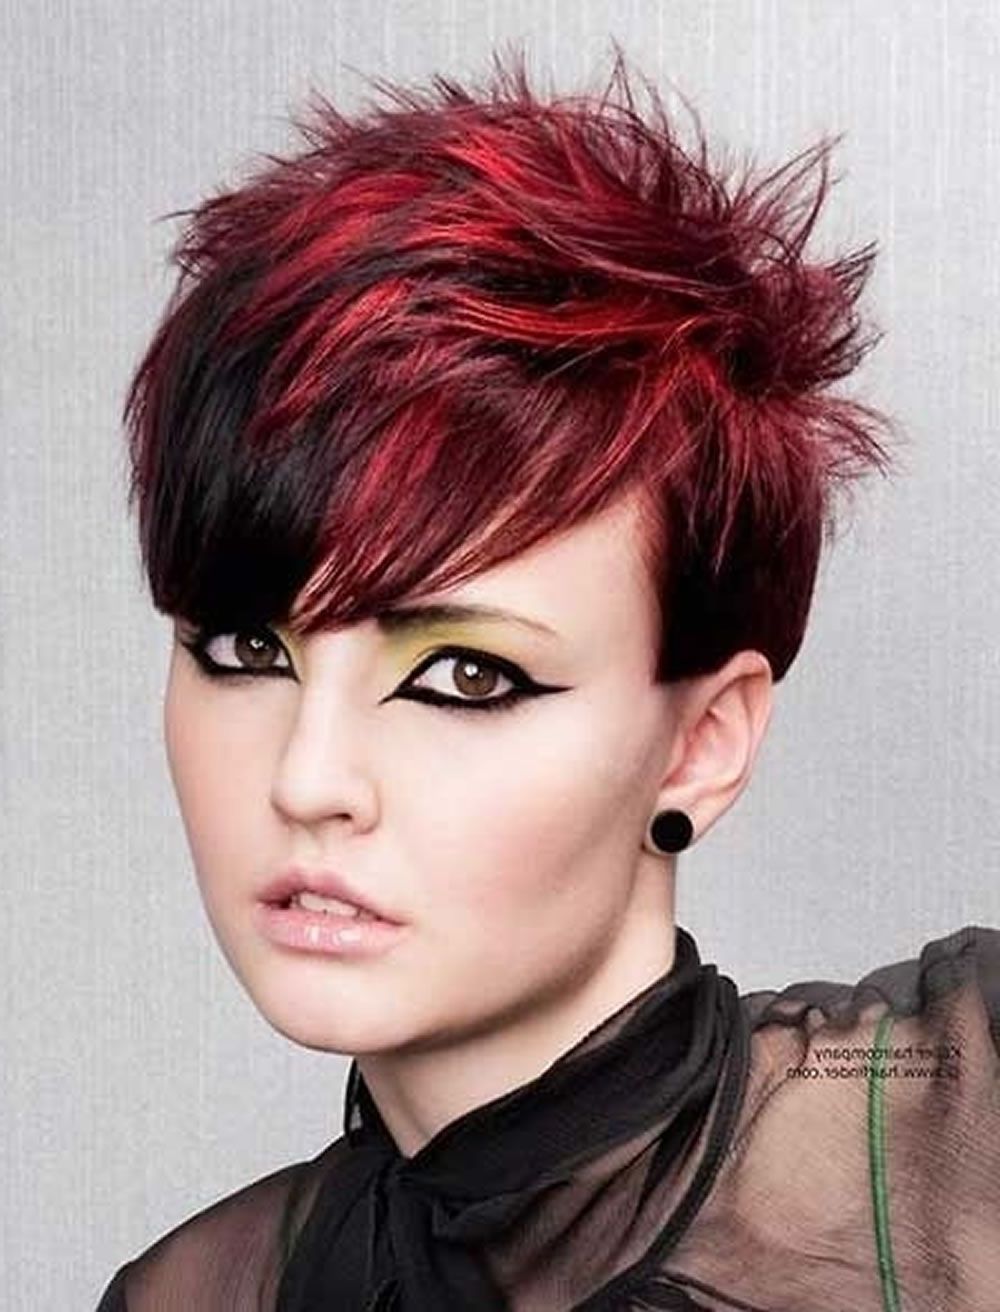 Rote Haarfarbe Für Kurze Frisuren | Cooles Haarschnitt Tutorial Für Inside Red And Black Short Hairstyles (View 3 of 25)